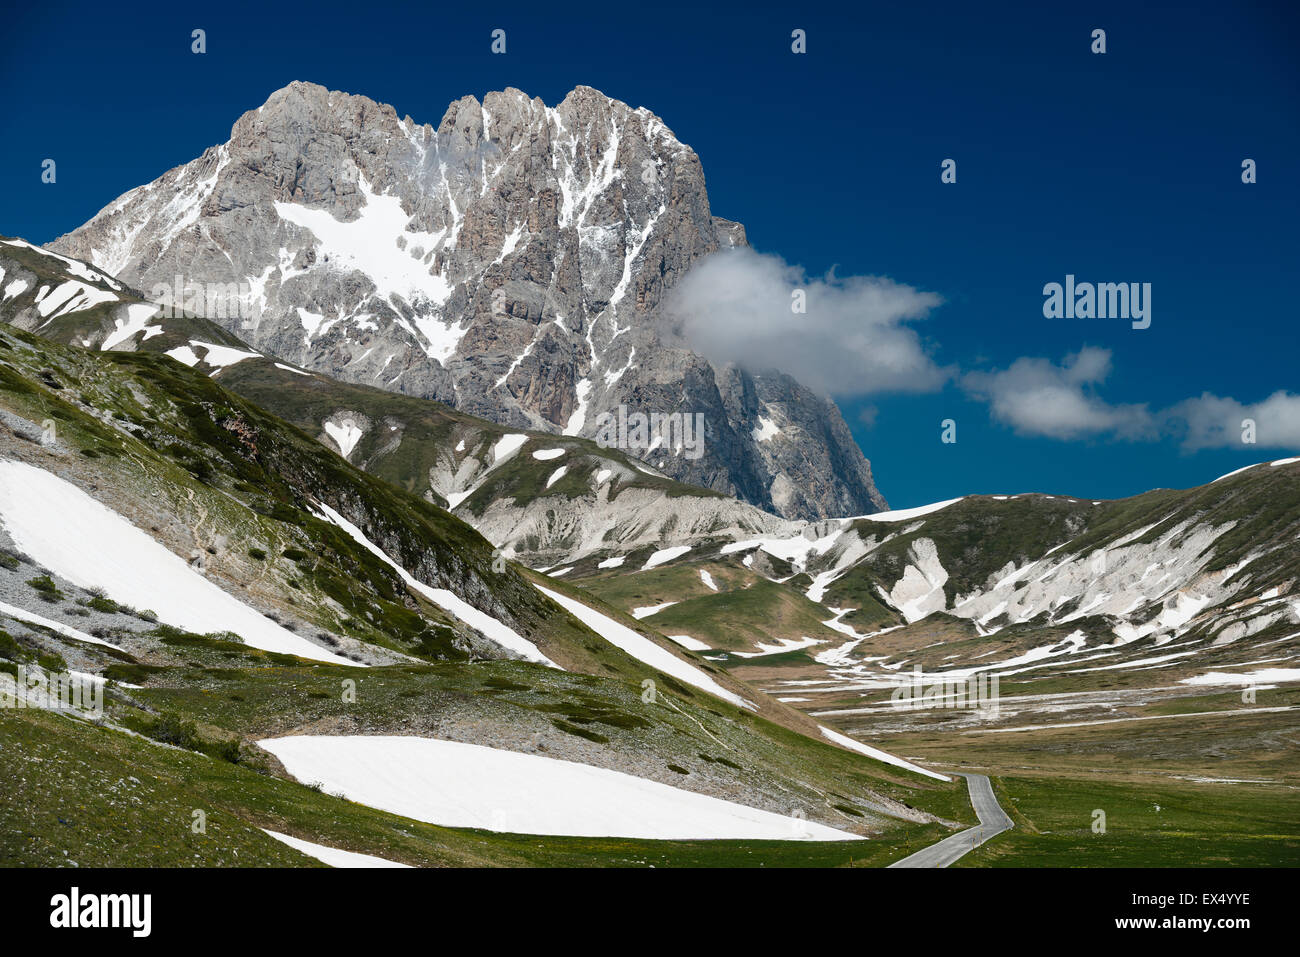 Corno Grande, 2912m, Campo Imperatore, Parco Nazionale del Gran Sasso e Monti della Laga, Abruzzo, Italy Stock Photo